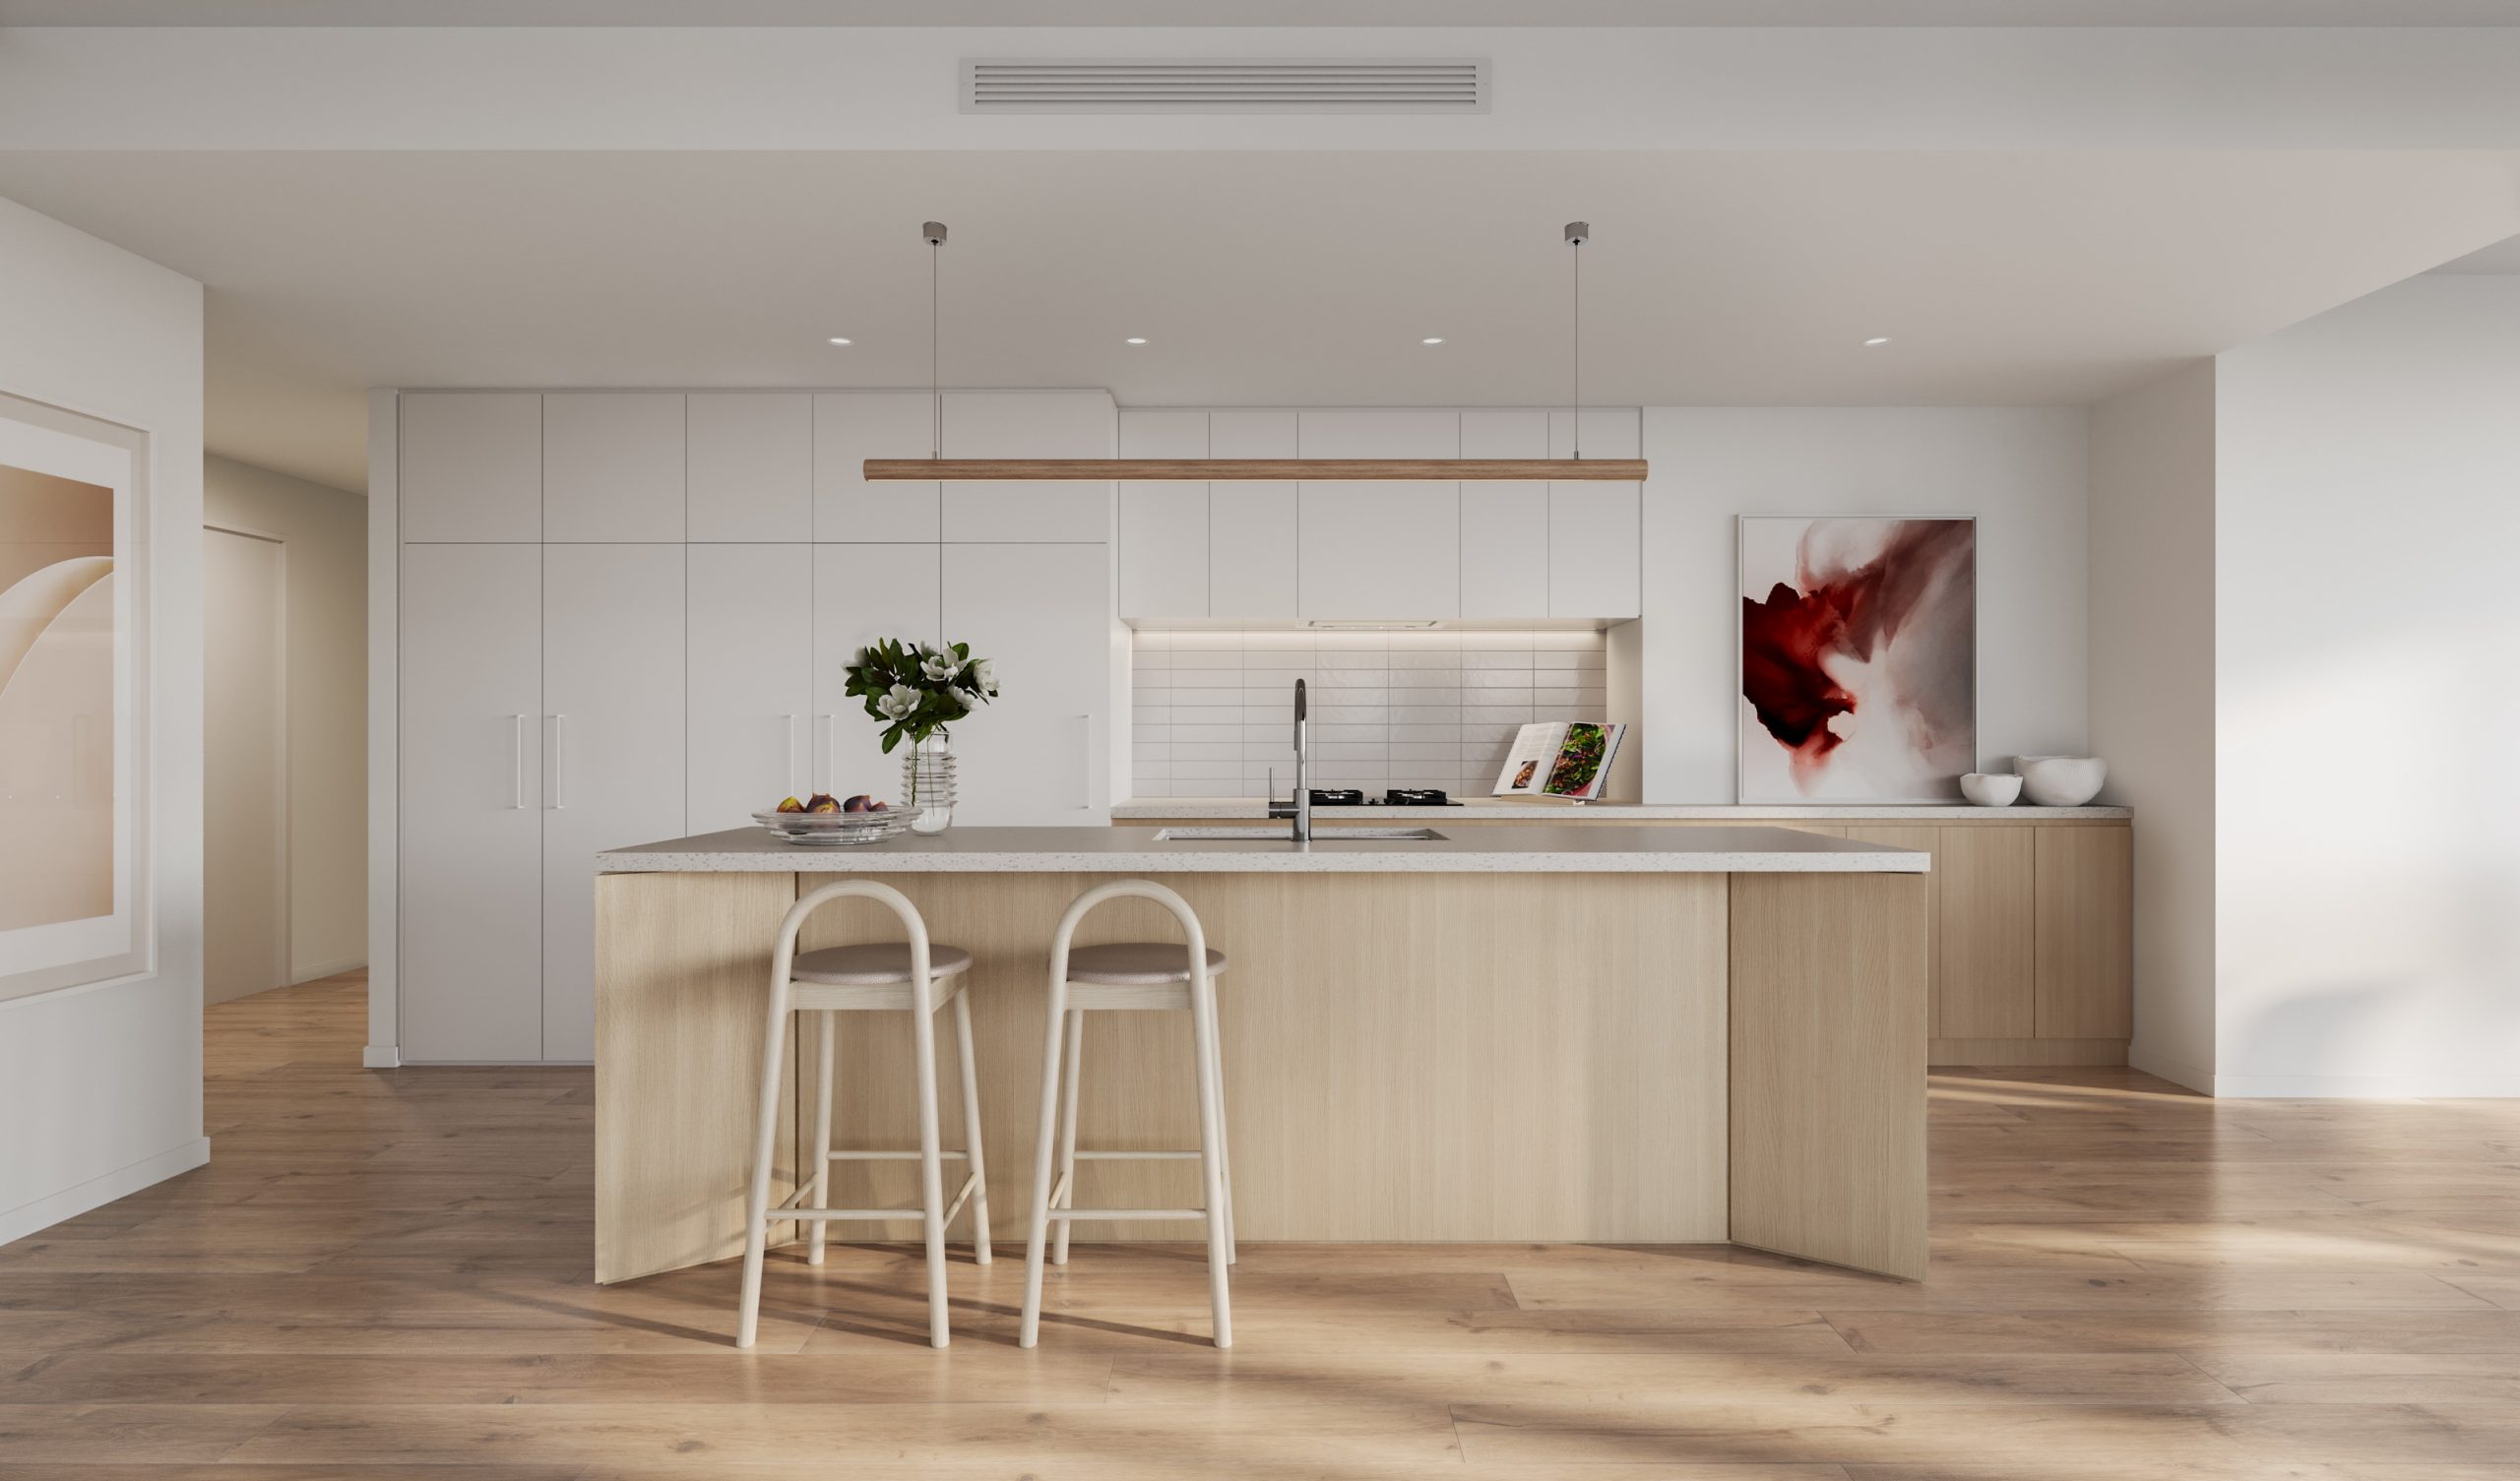 fkd-studio-3d-archiecture-visualisation-cgi-archviz-the-witton-queensland-interior-kitchen-living